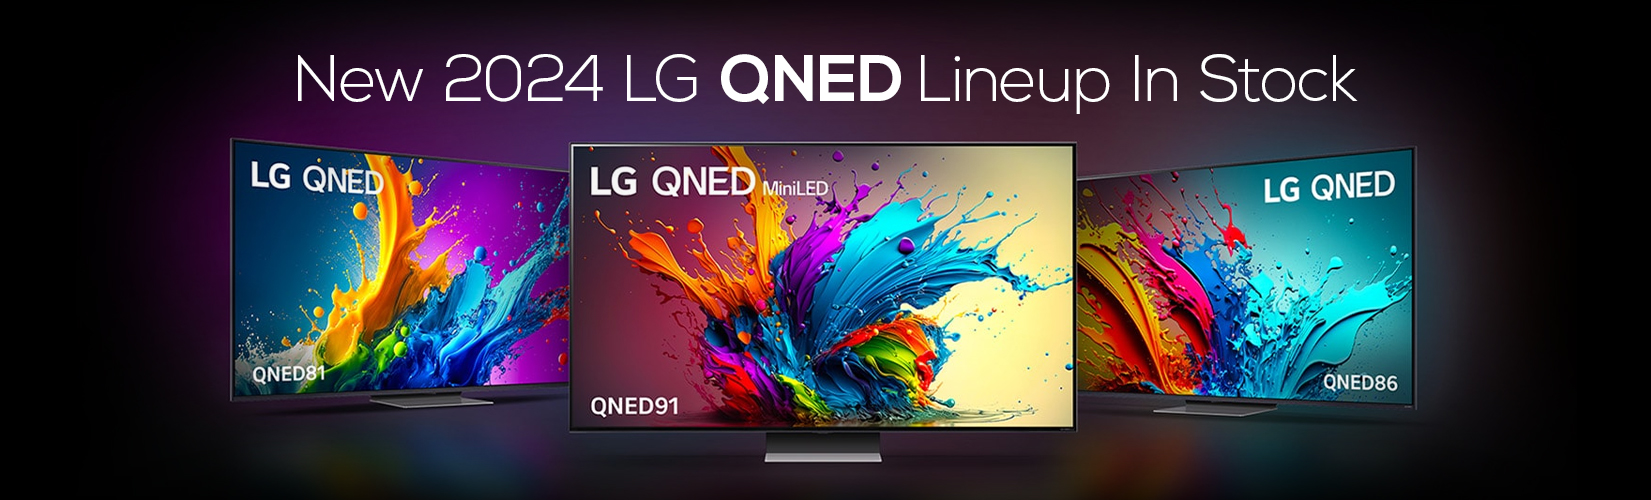 LG QNED HDTVs